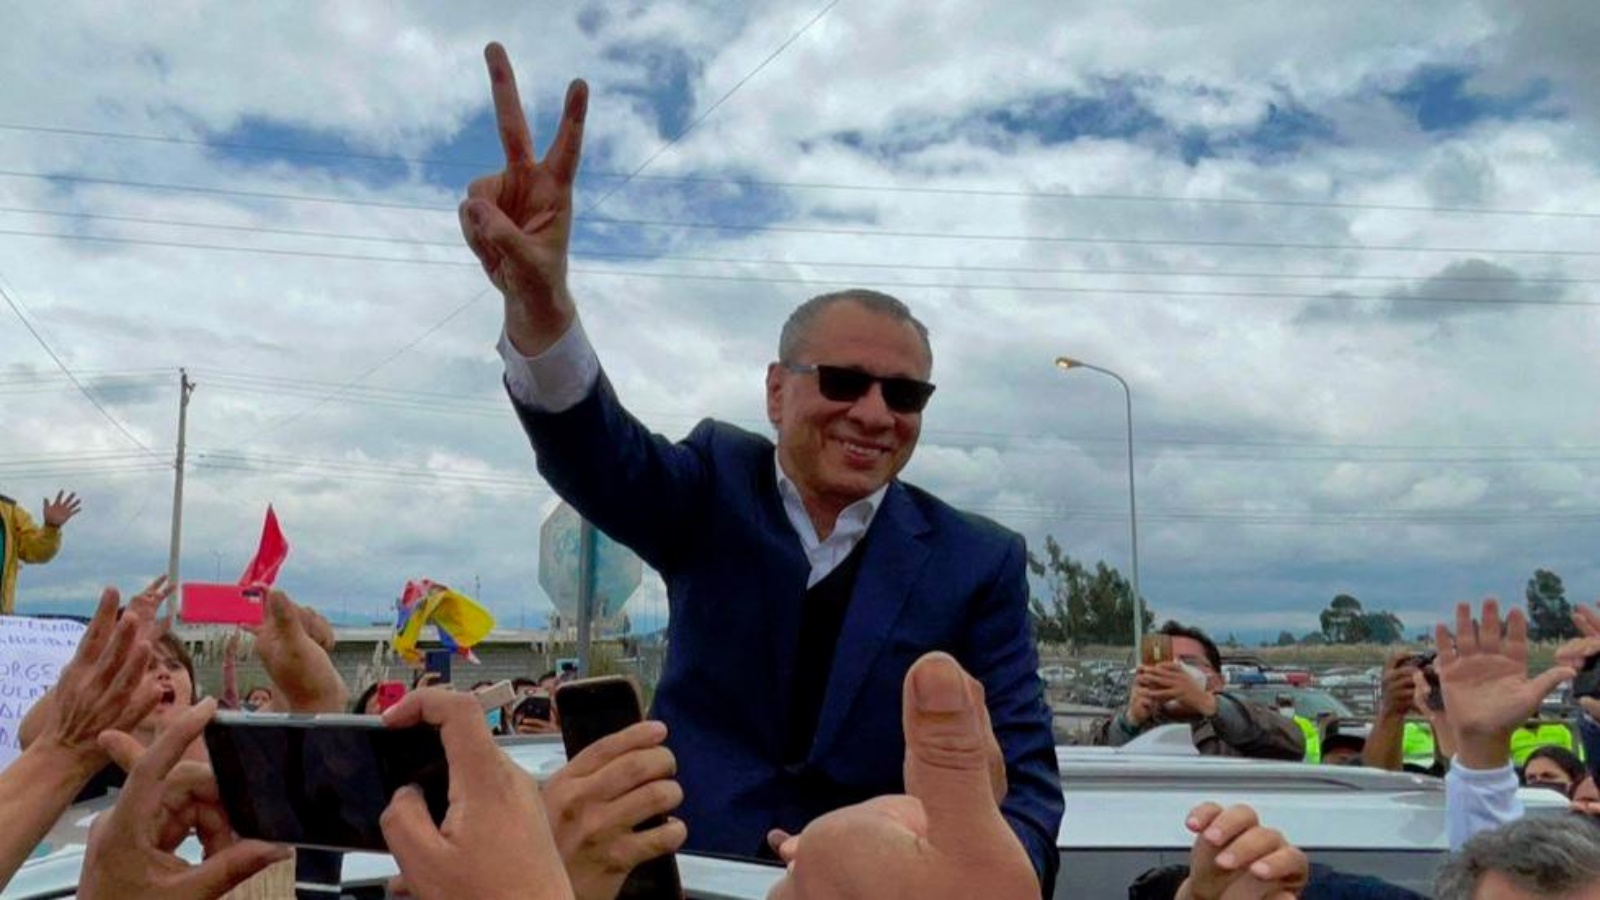 نائب الرئيس الإكوادوري السابق (2013-2017) خورخي غلاس - الذي كان يقضي عقوبة لتلقيه ملايين من الرشاوى من شركة Odebrecht البرازيلية- بعد إطلاق سراحه من السجن، في لاكاتونجا، الإكوادور